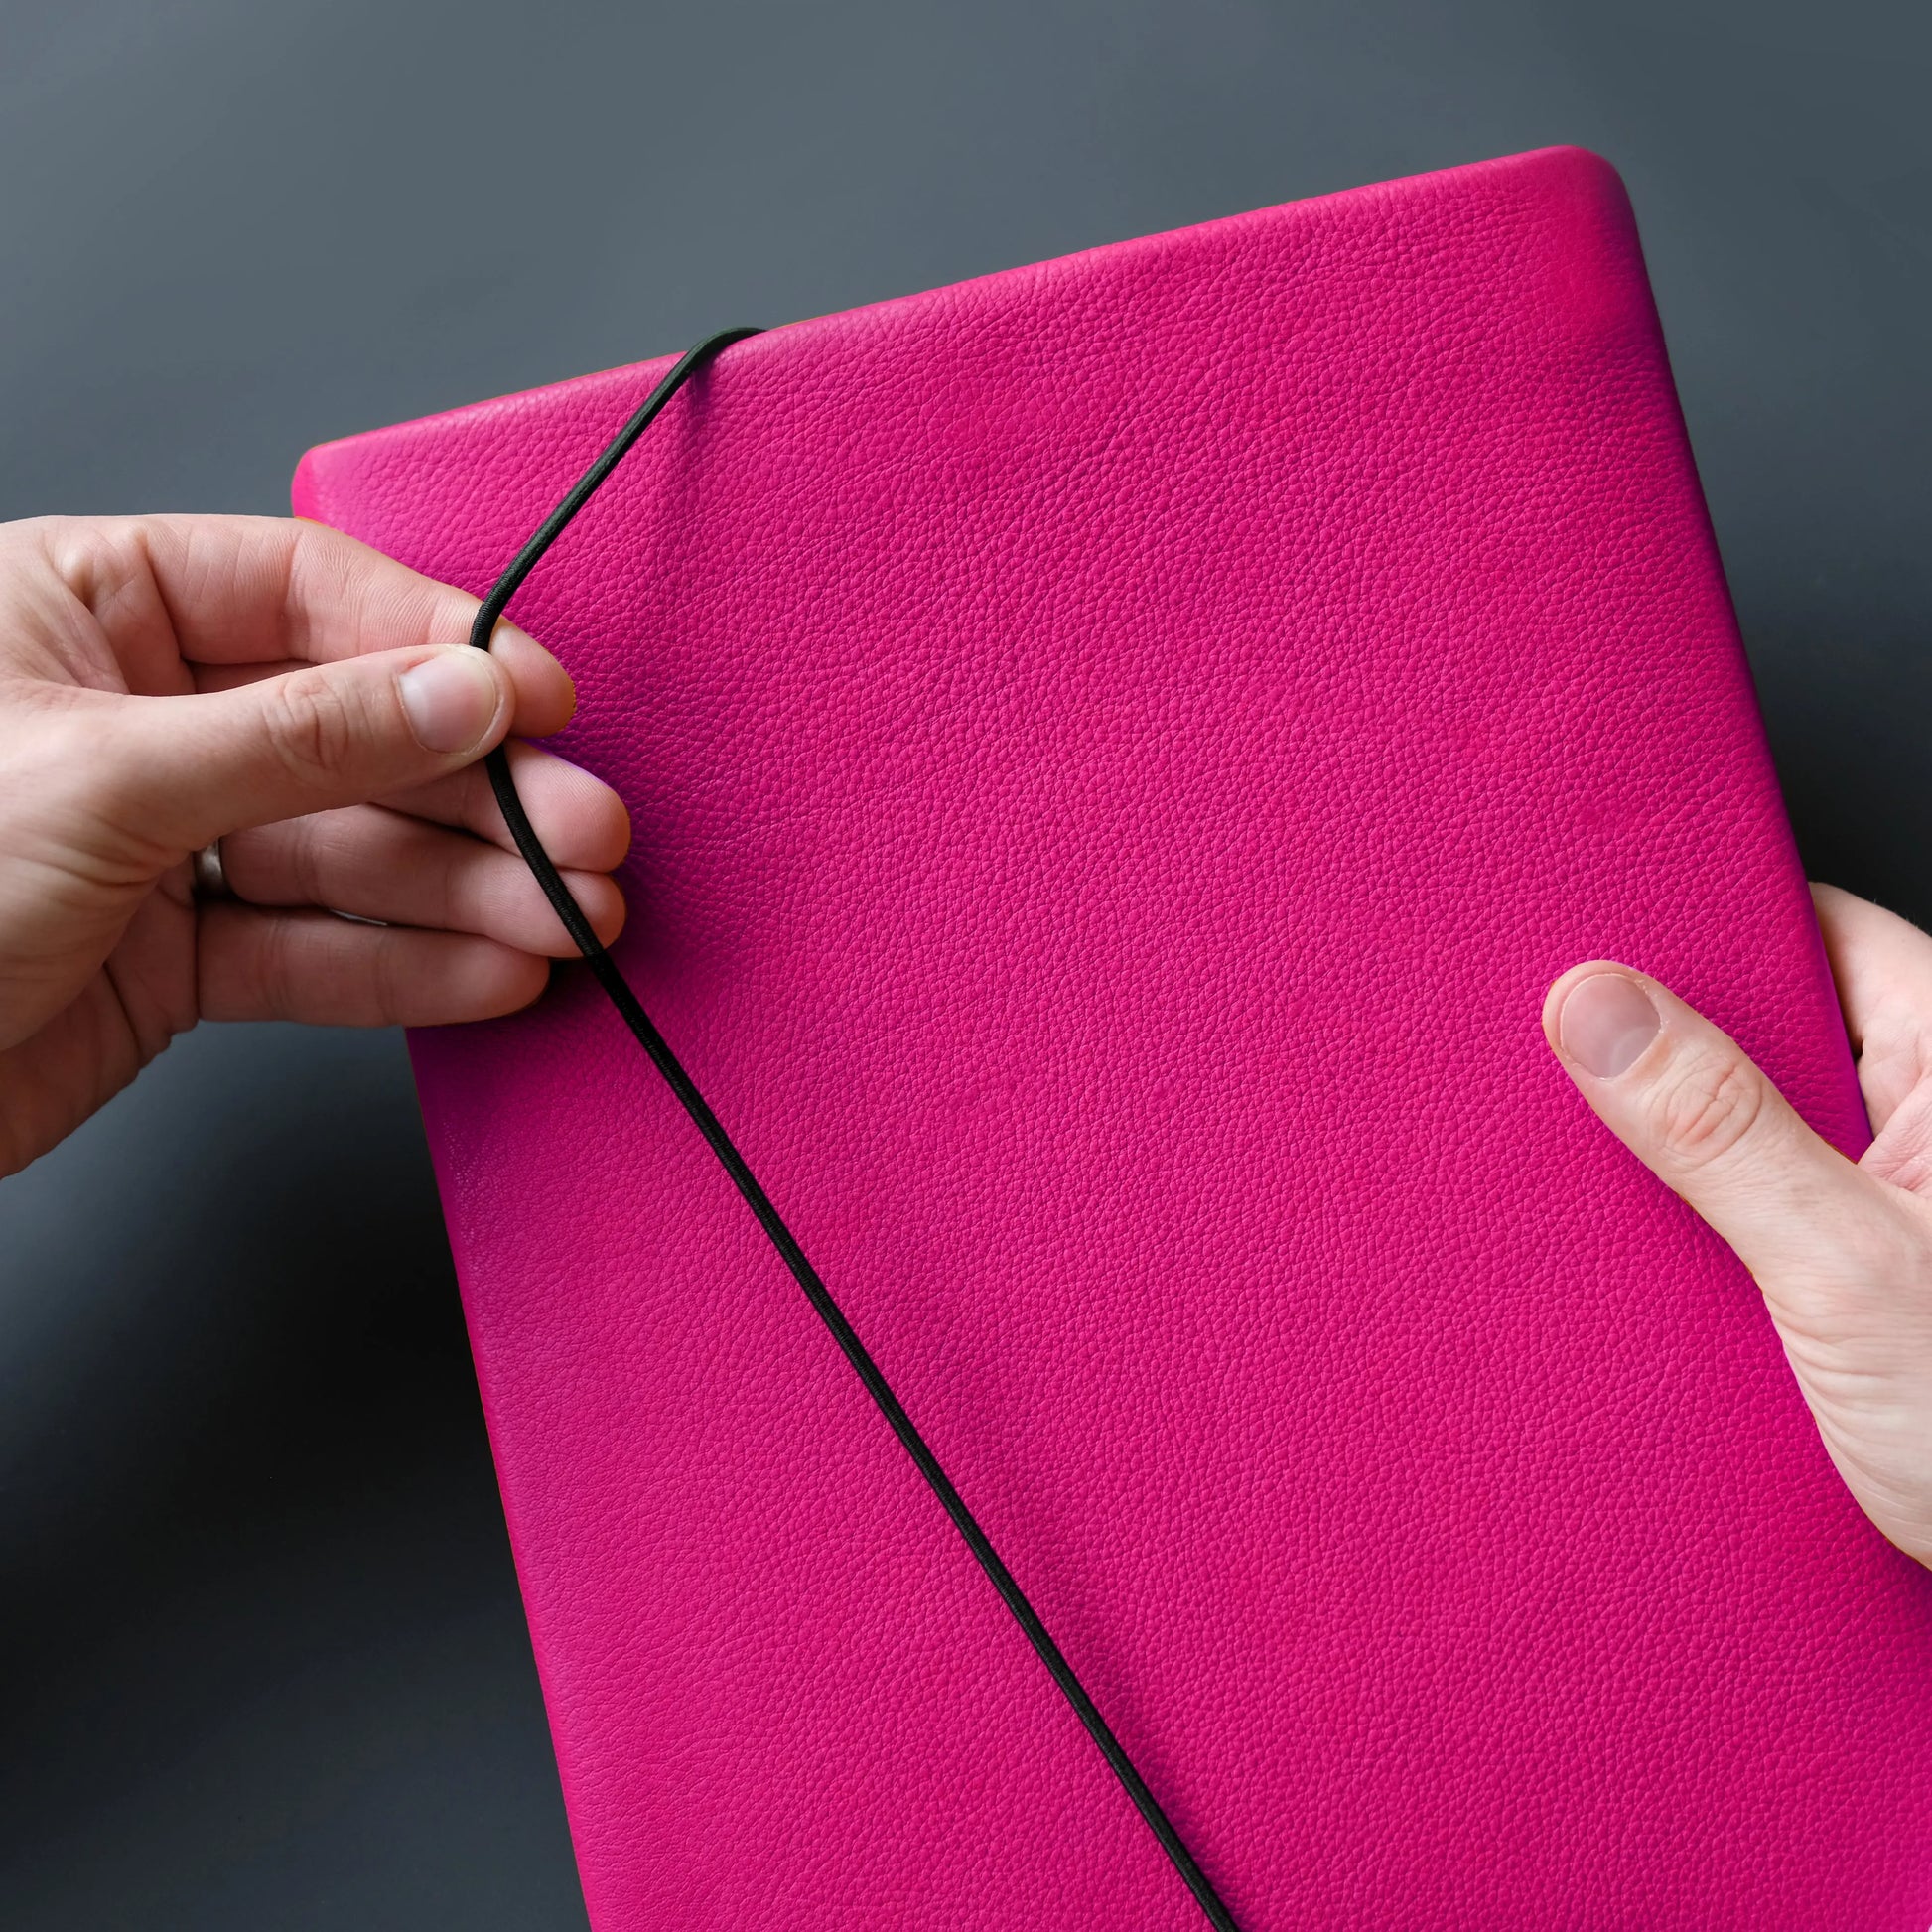 Lederhülle für iPads in neonpink wird mit Verschlussgummi geschlossen